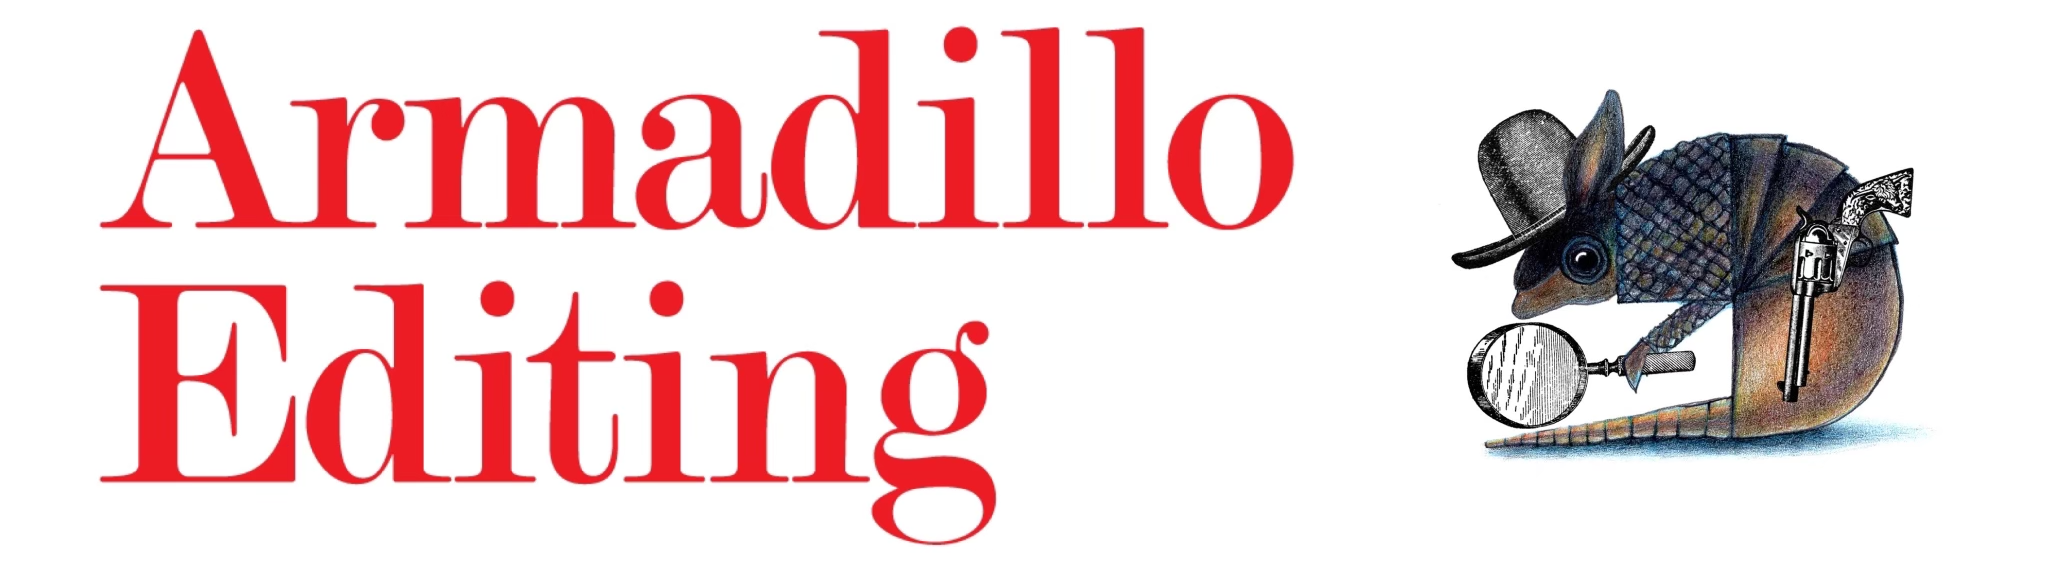 Armadillo Editing